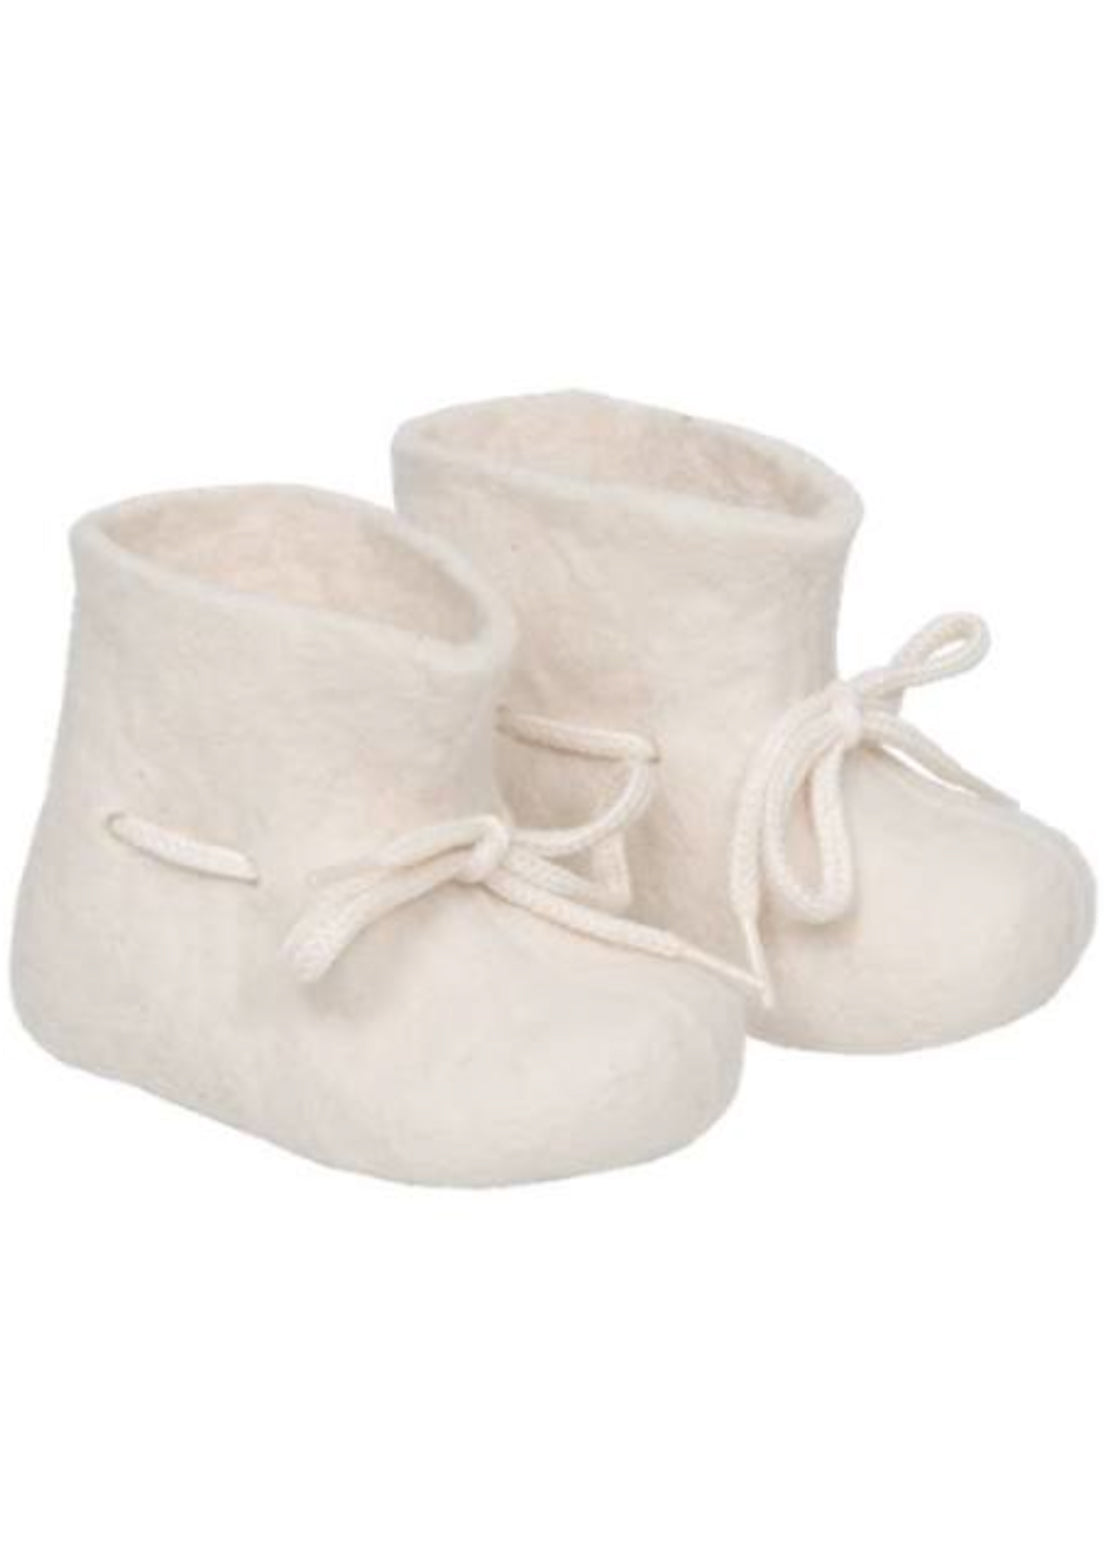 Glerups Infant Slipper Boots White